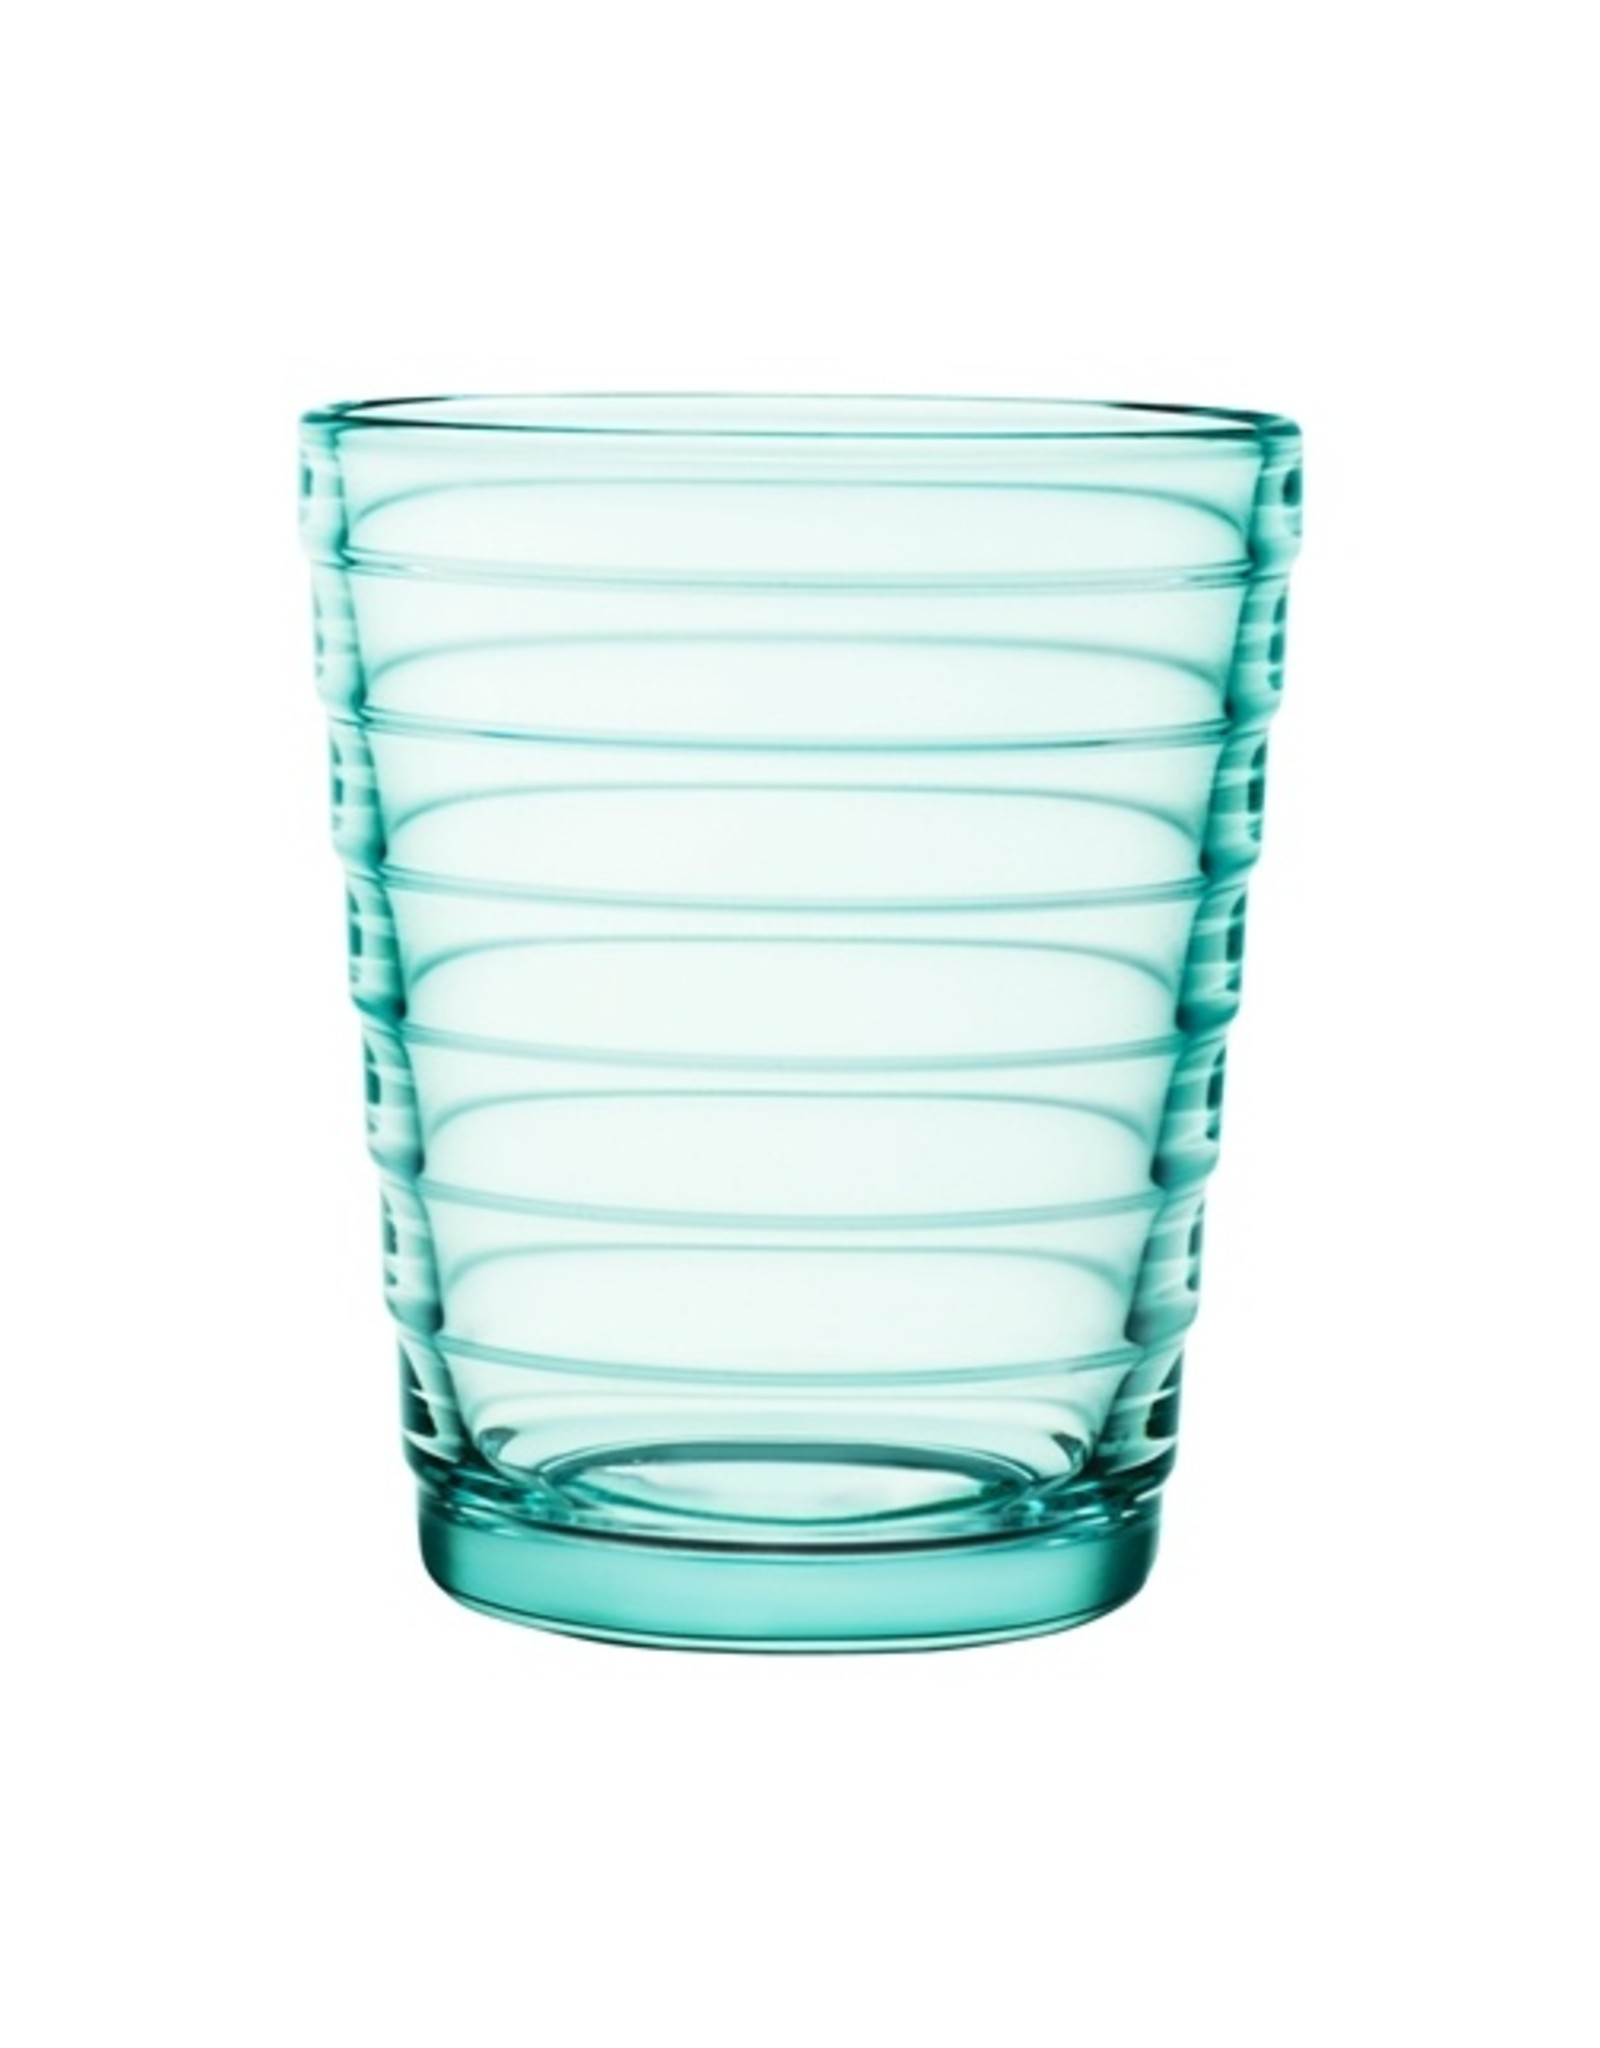 Iittala Iittala Aino Aalto verre - 22 cl - Vert d'eau - 2 pièces